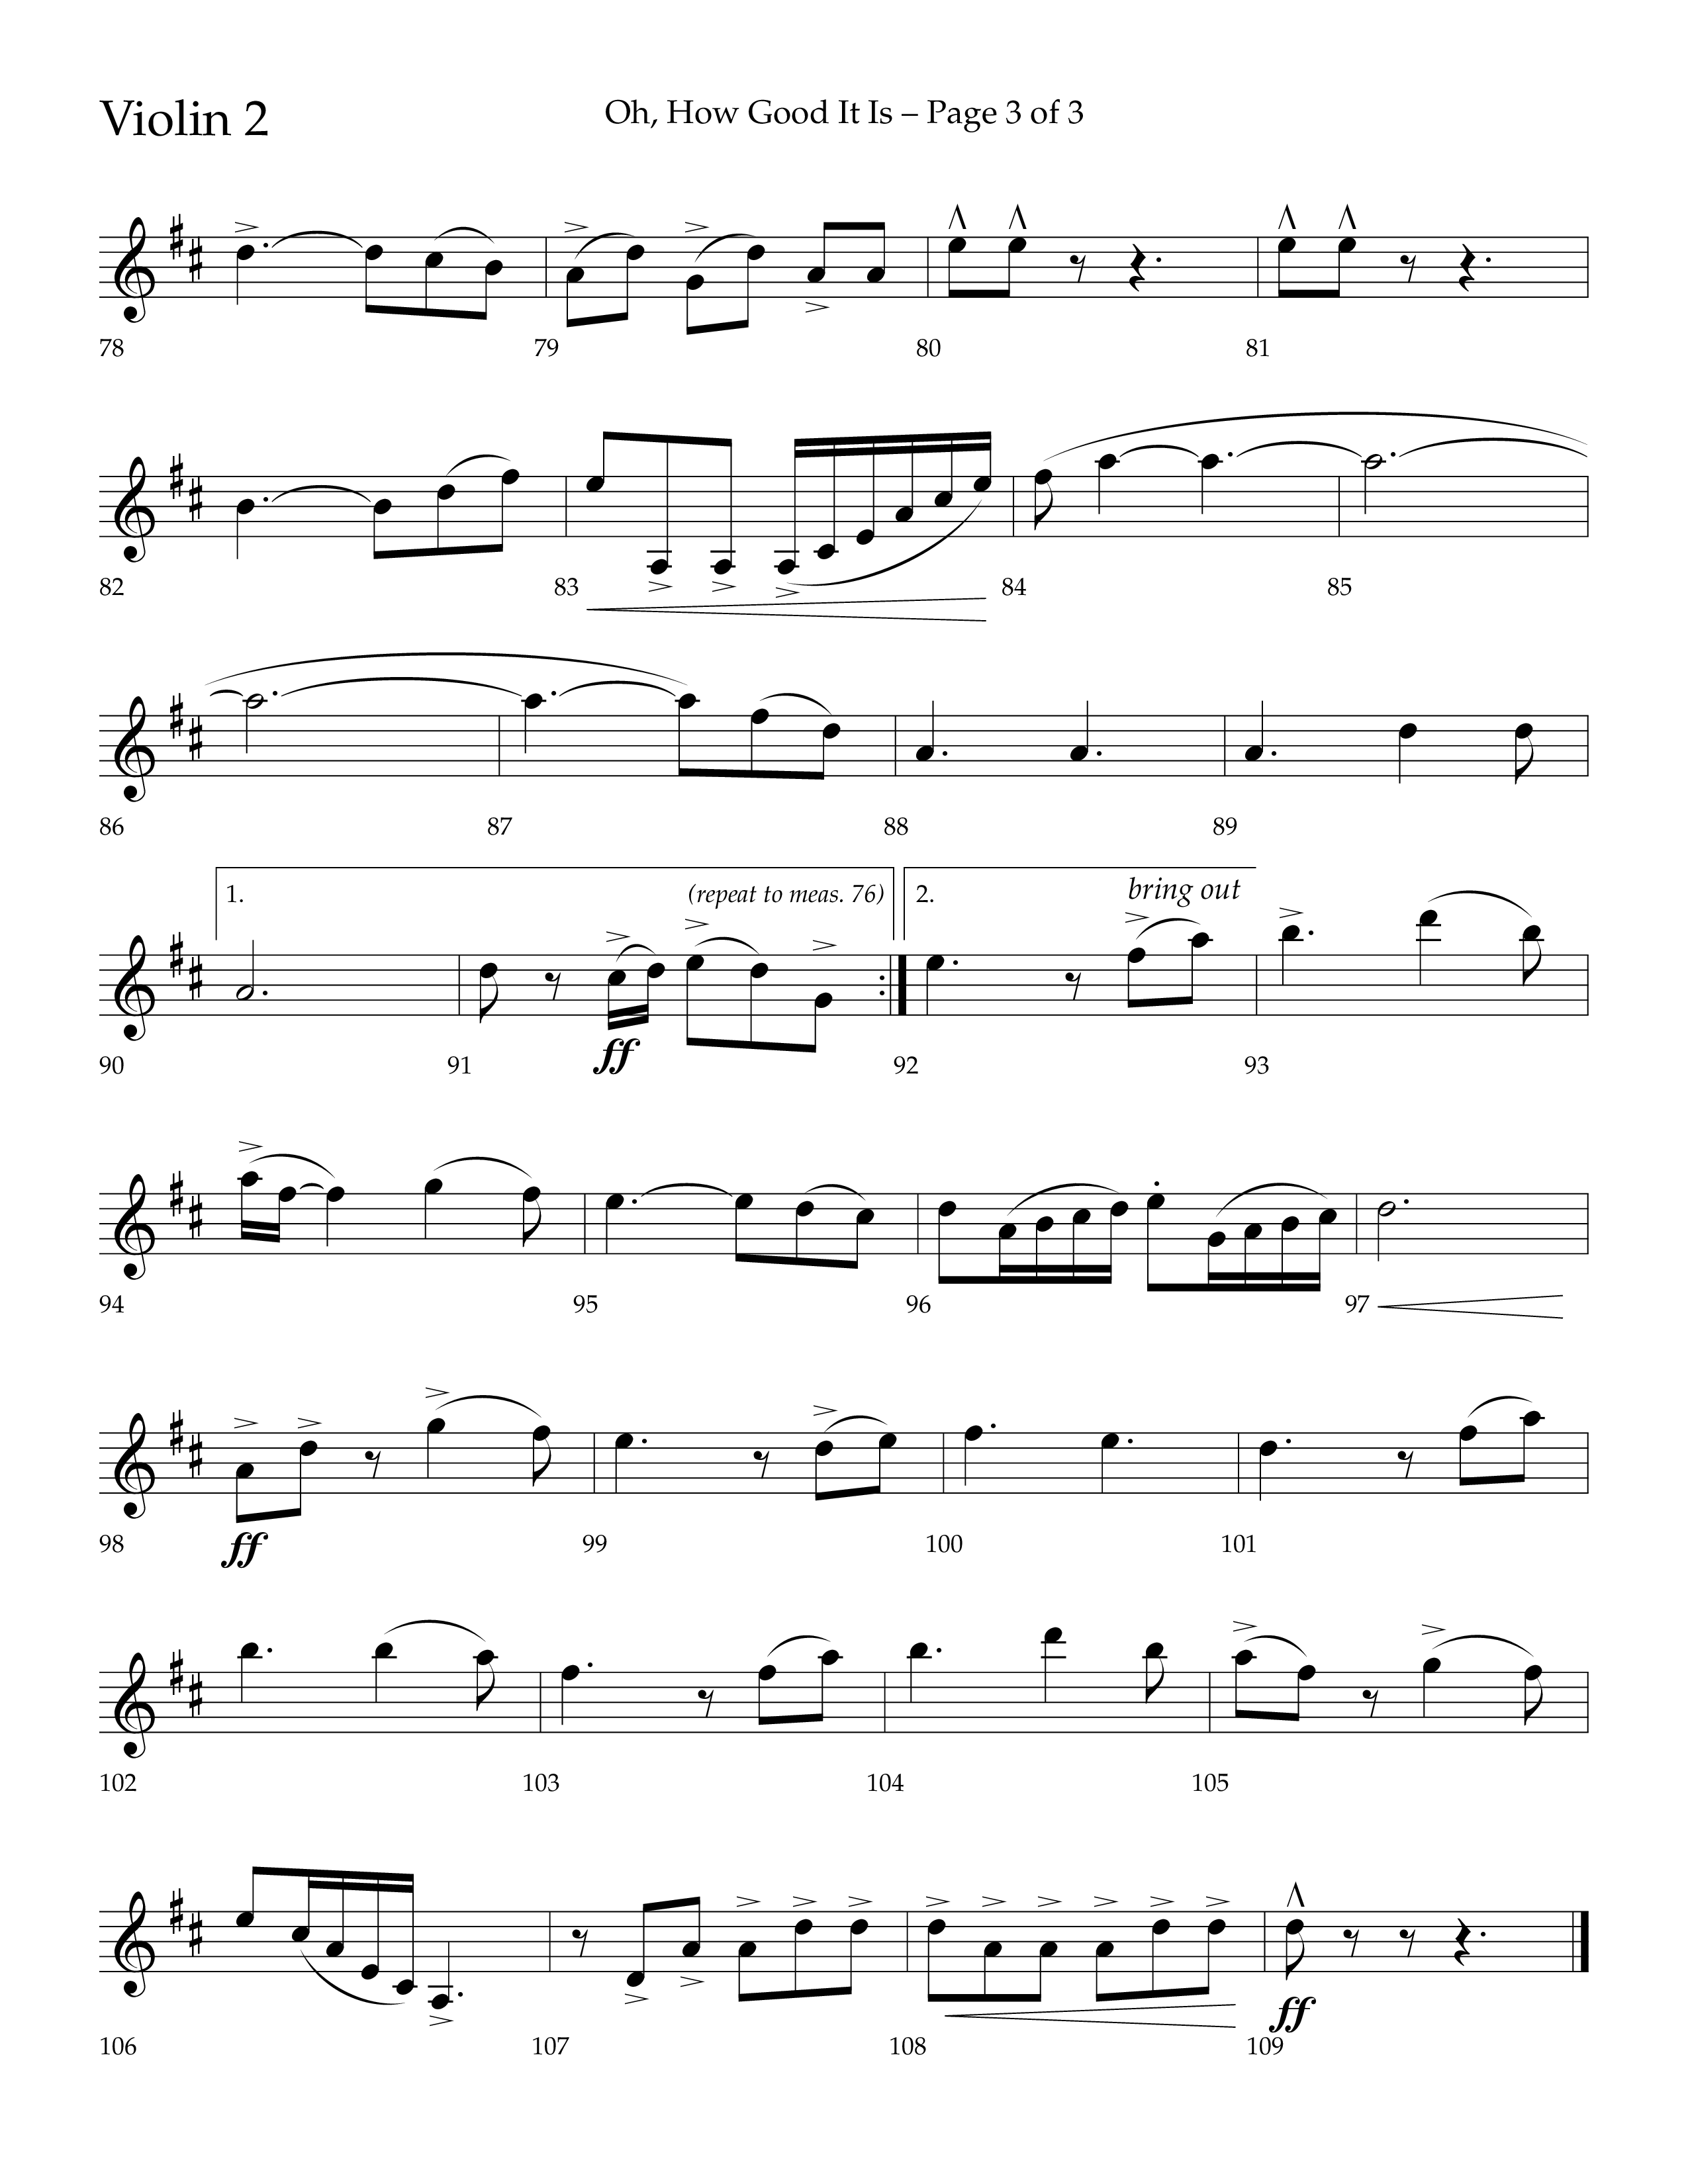 Oh How Good It Is (Choral Anthem SATB) Violin 2 (Lifeway Choral / Arr. David Hamilton)